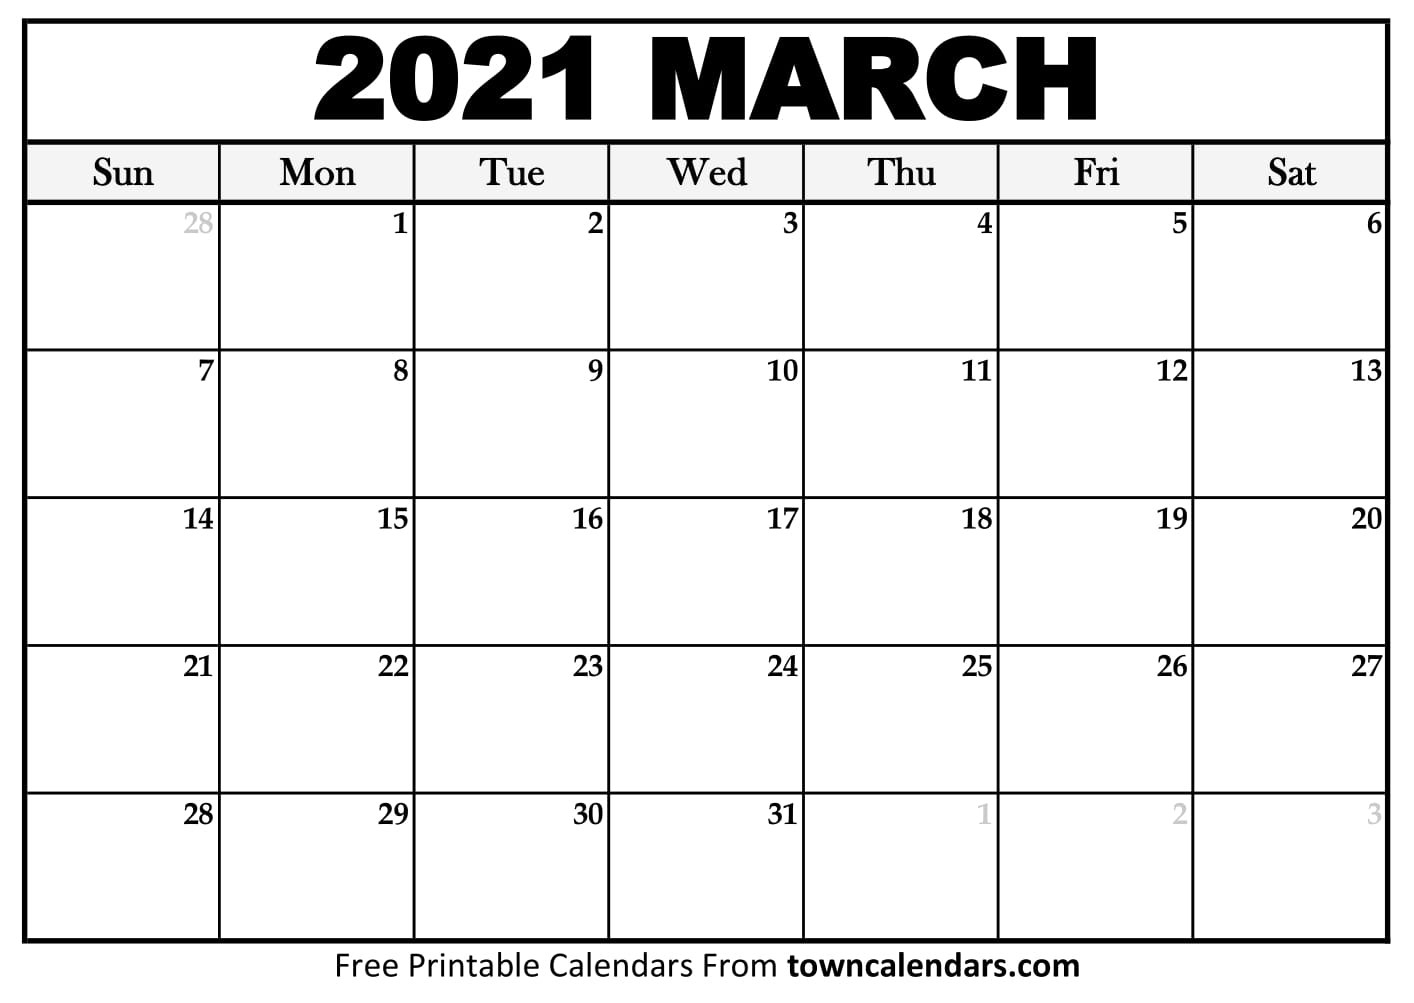 Printable March 2021 Calendar - Towncalendars-March Calendar 2021 Printable